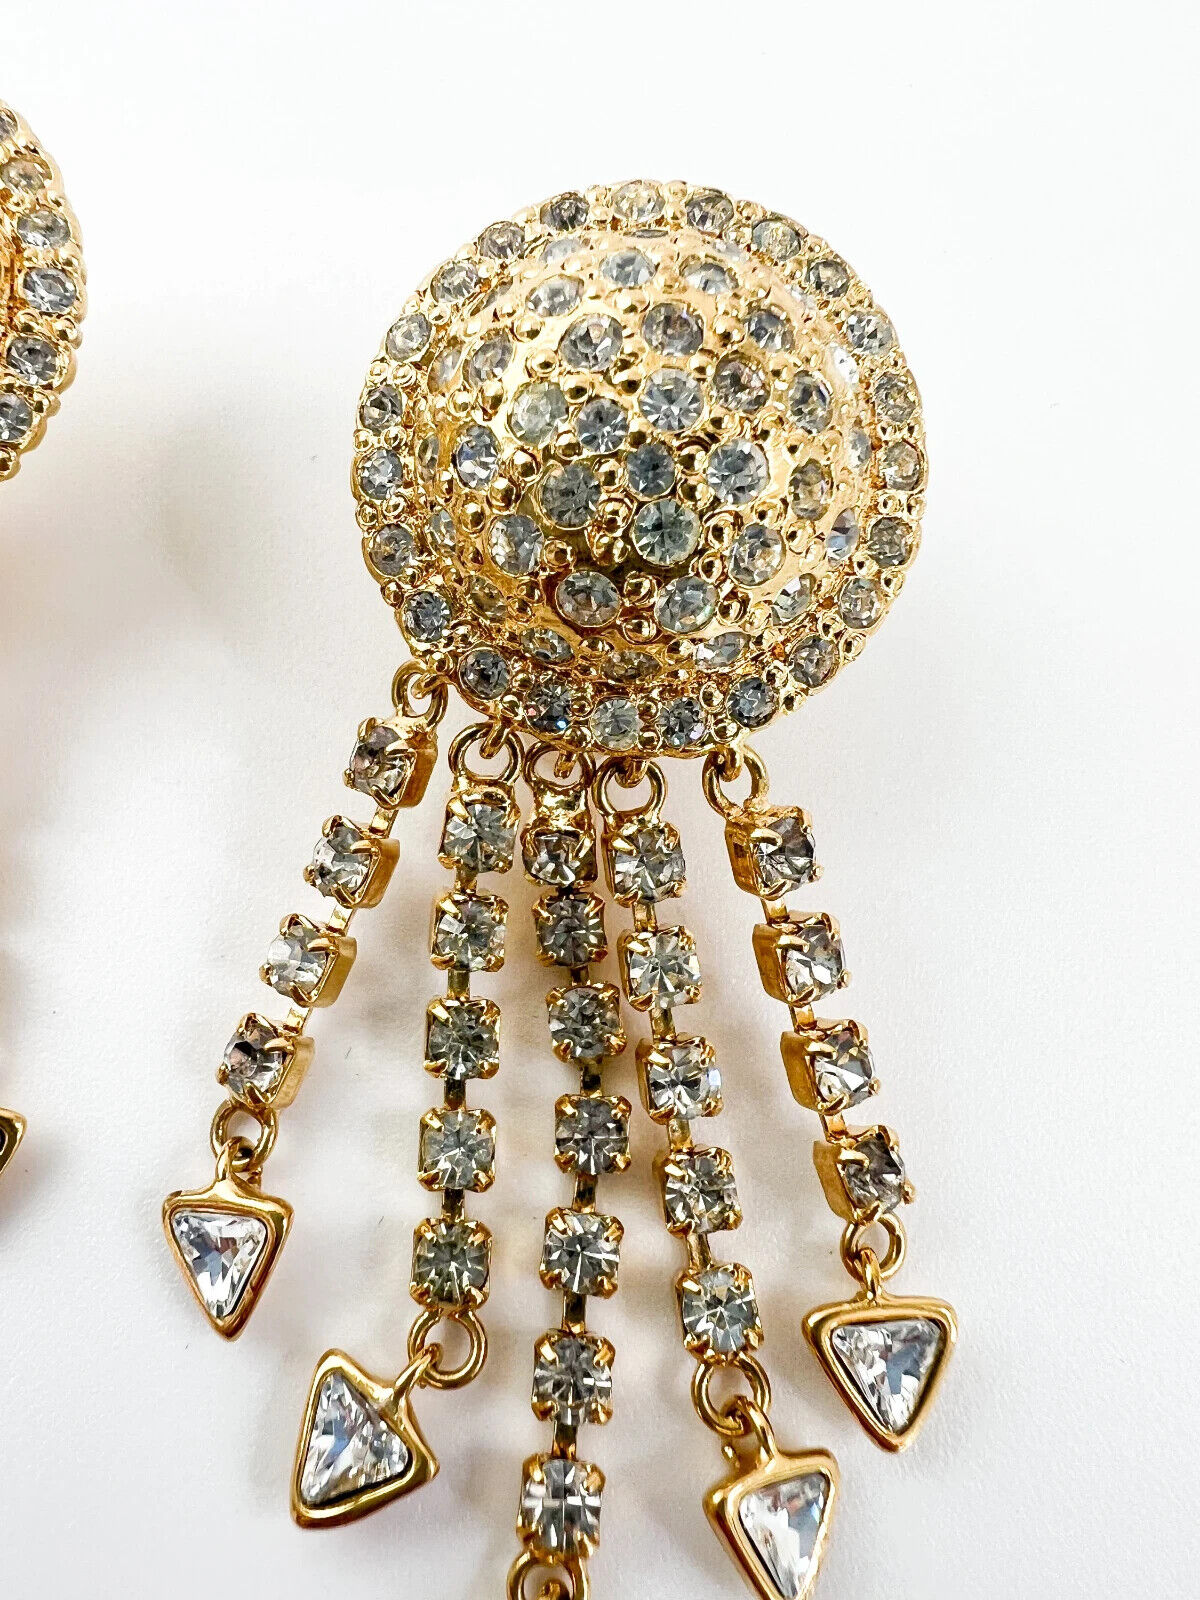 Vintage VERSACE Earrings, Jellyfish Earrings Gianni Versace Vintage Earrings, Dangle Earrings Gold, Drop Earrings, Bridal Earrings Gift